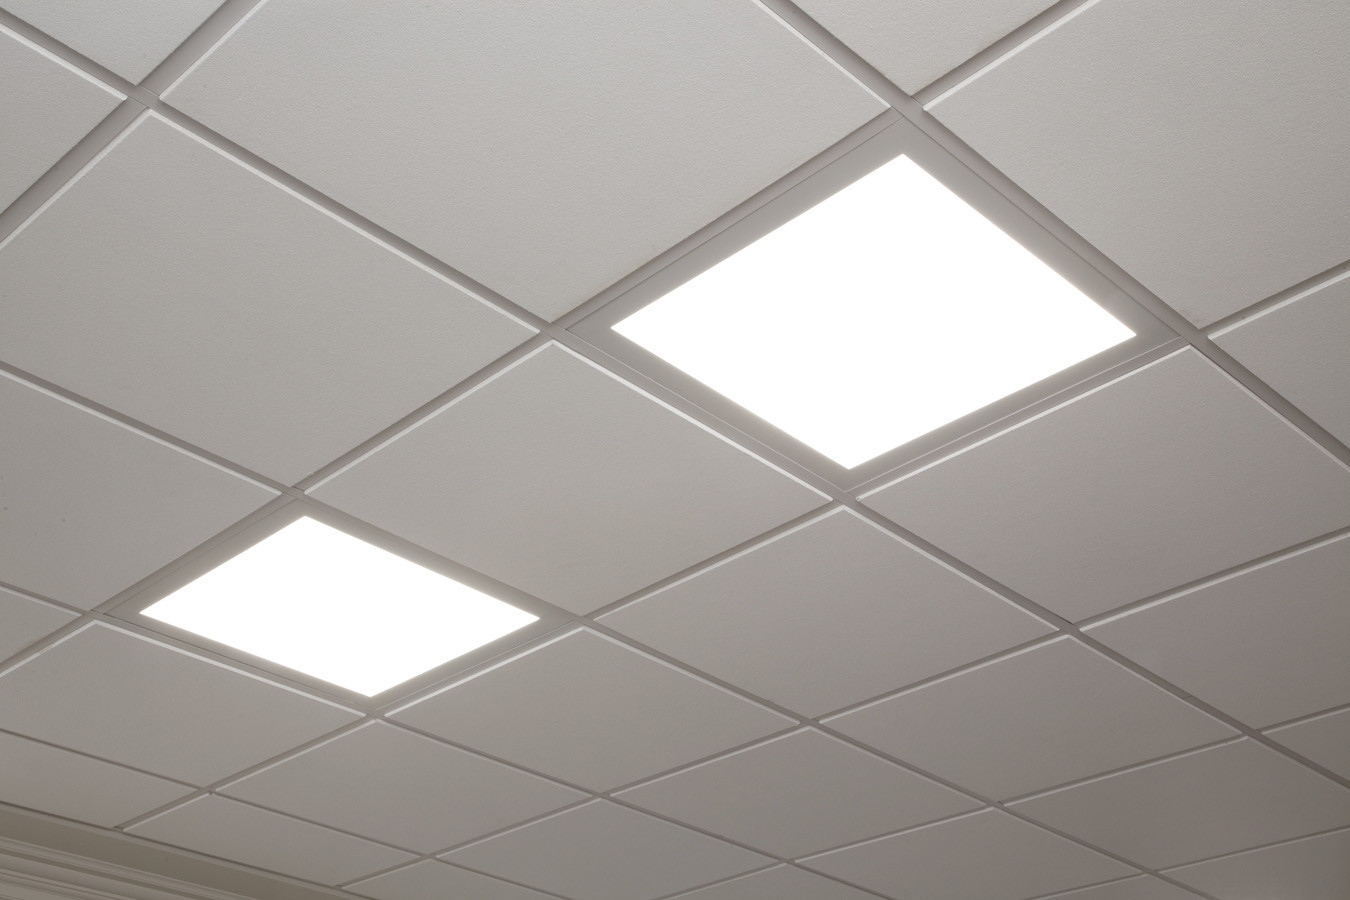 2x2 Ceiling Grid Lights2x2 ceiling grid lights ceiling lights